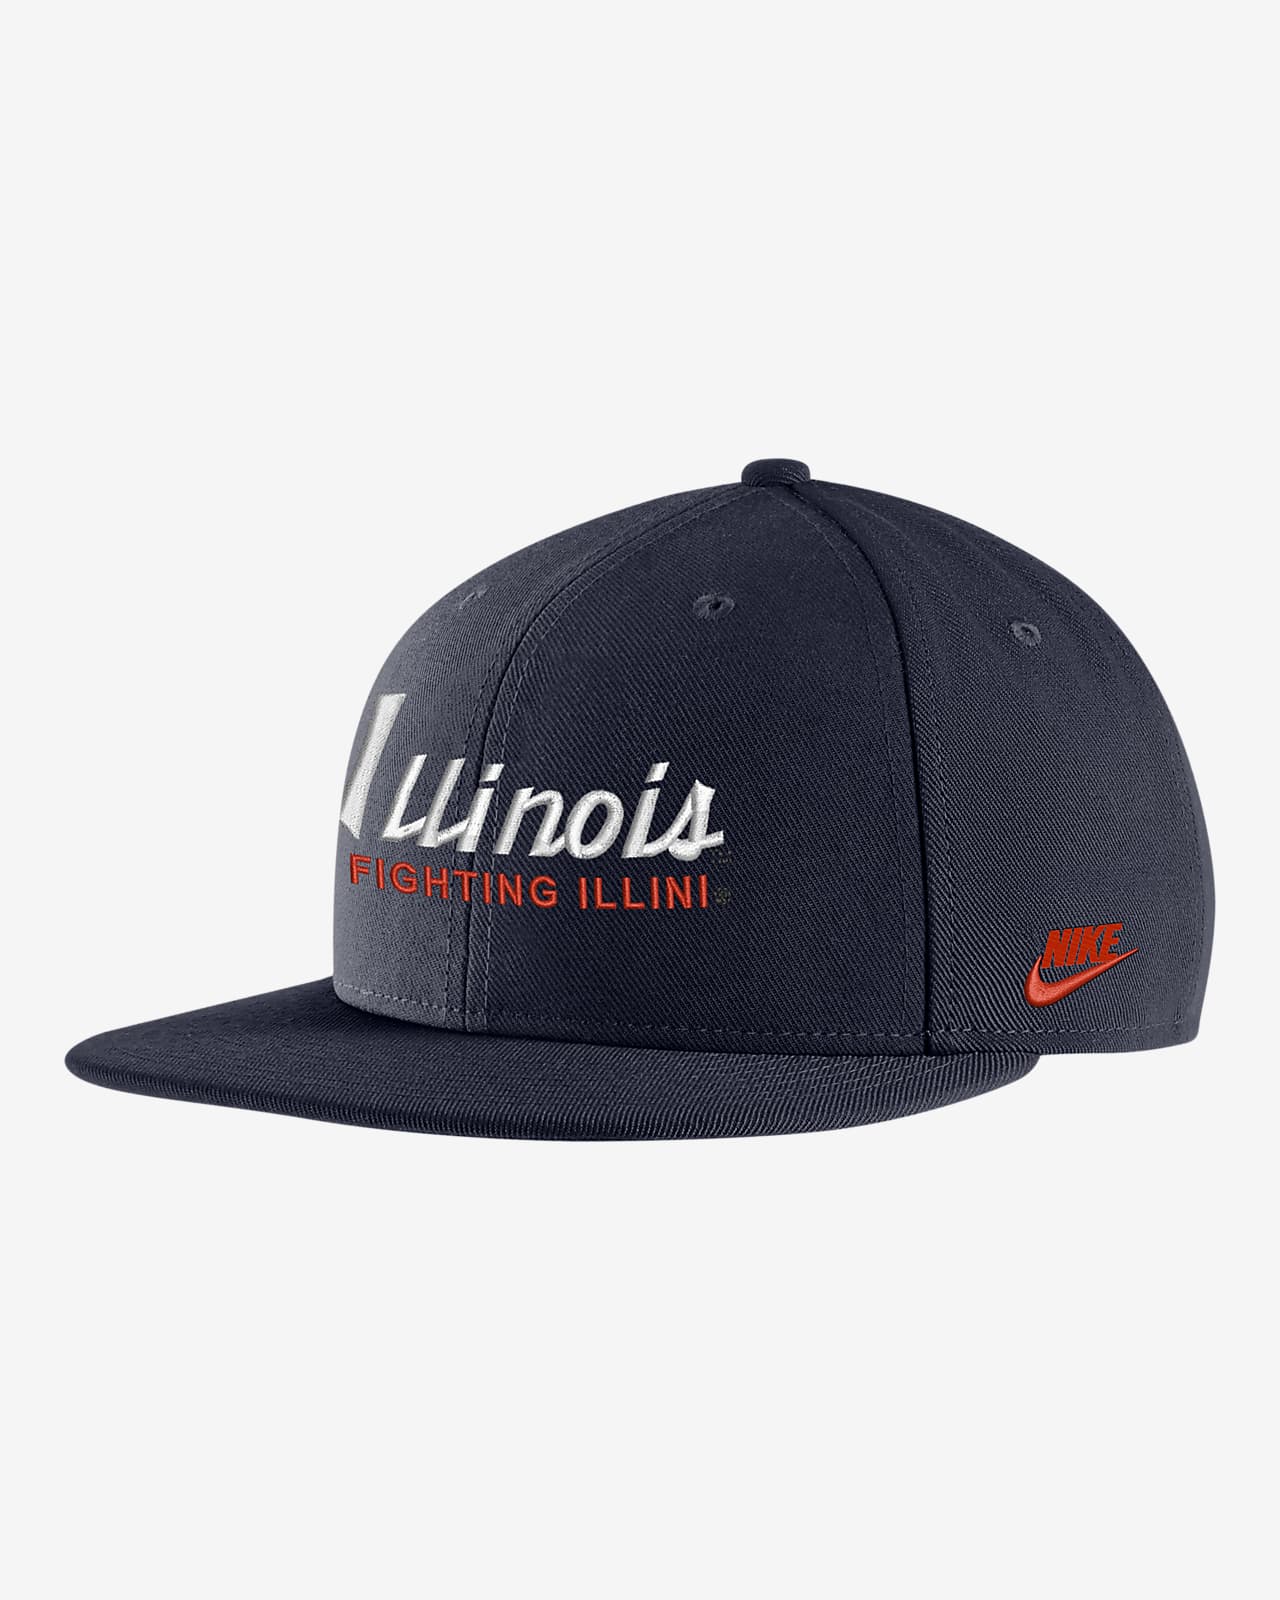 Gorra universitaria Nike Illinois